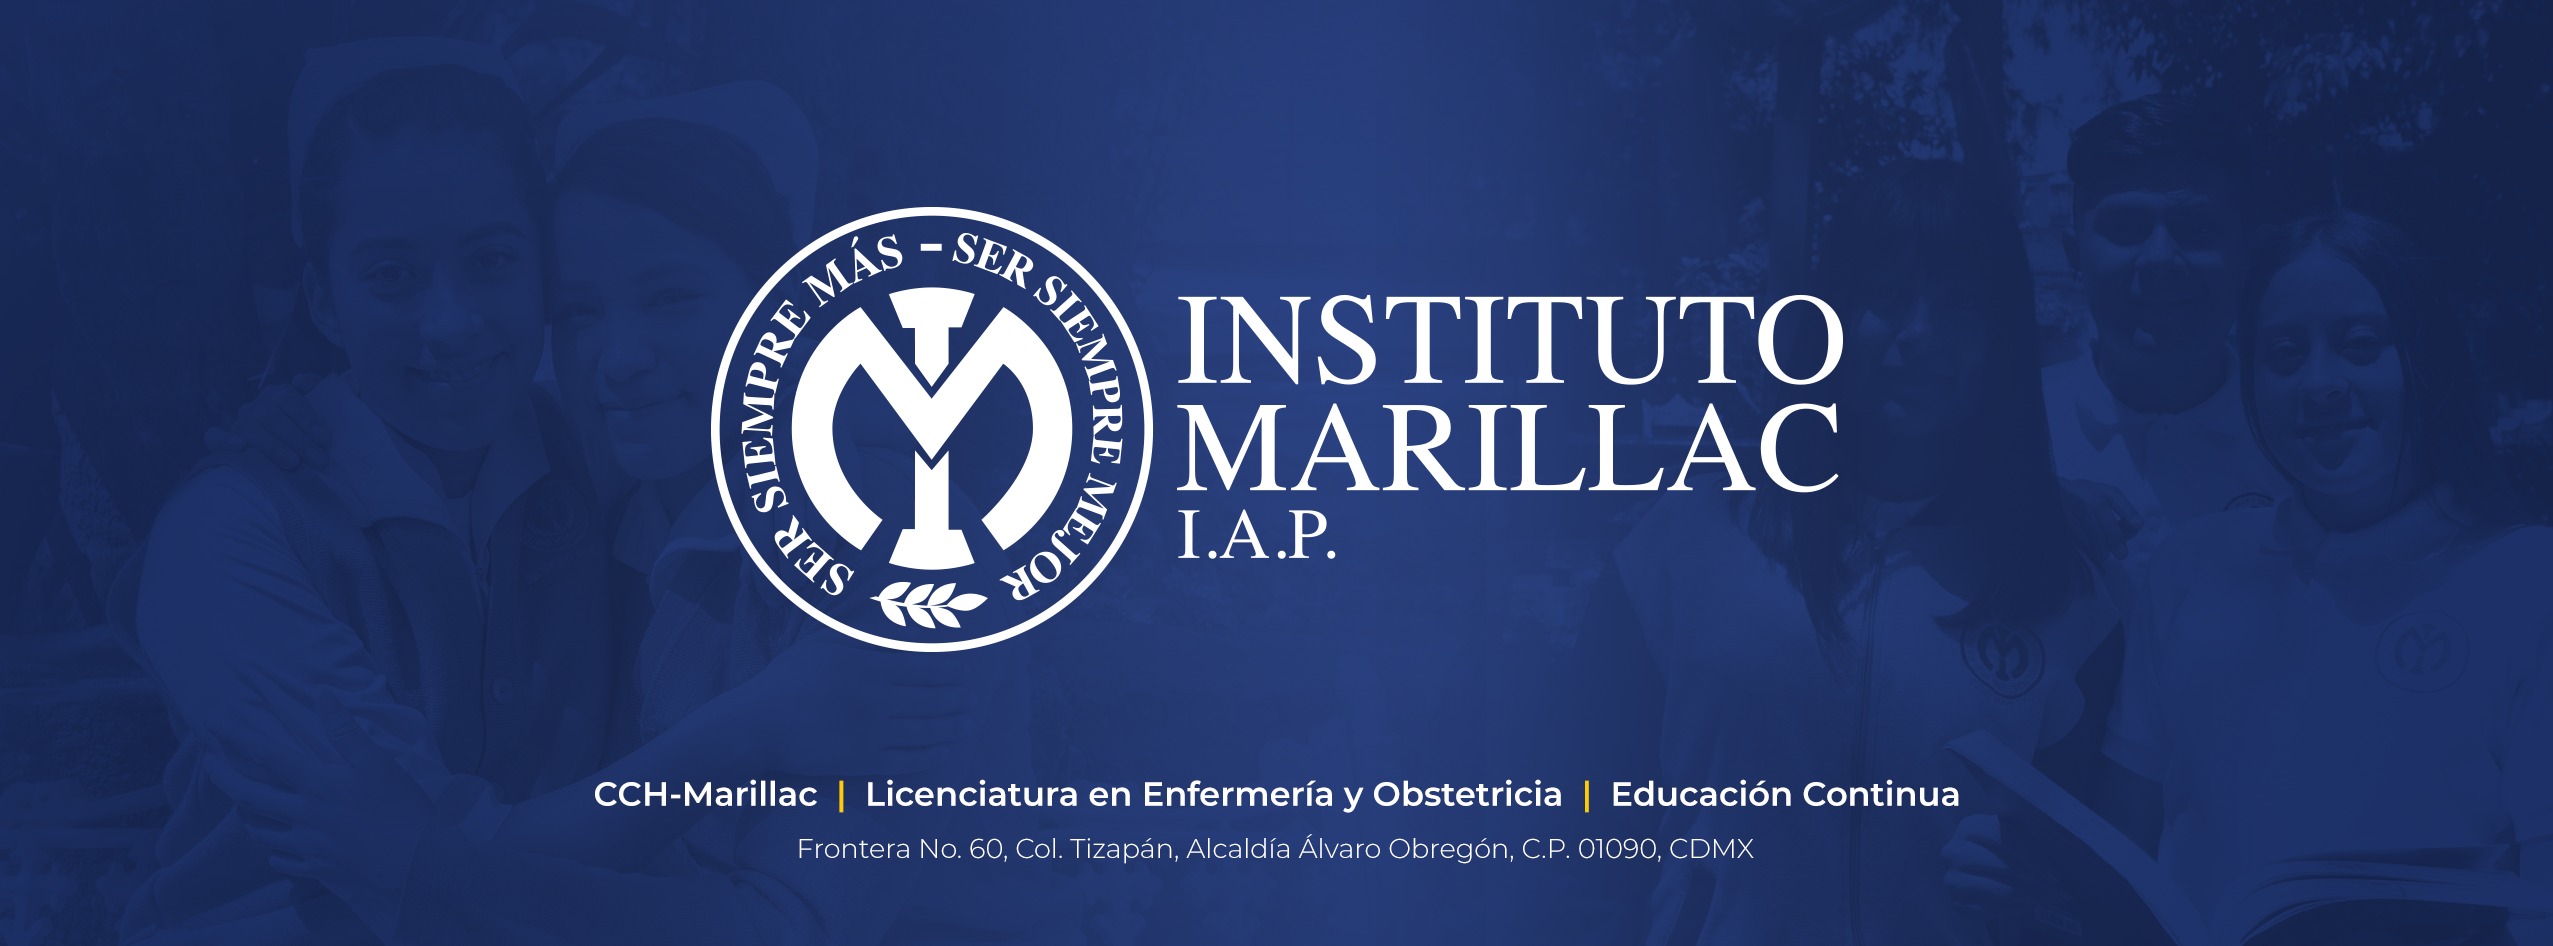 Instituto Marillac hace posible los sueños de los jóvenes mexicanos